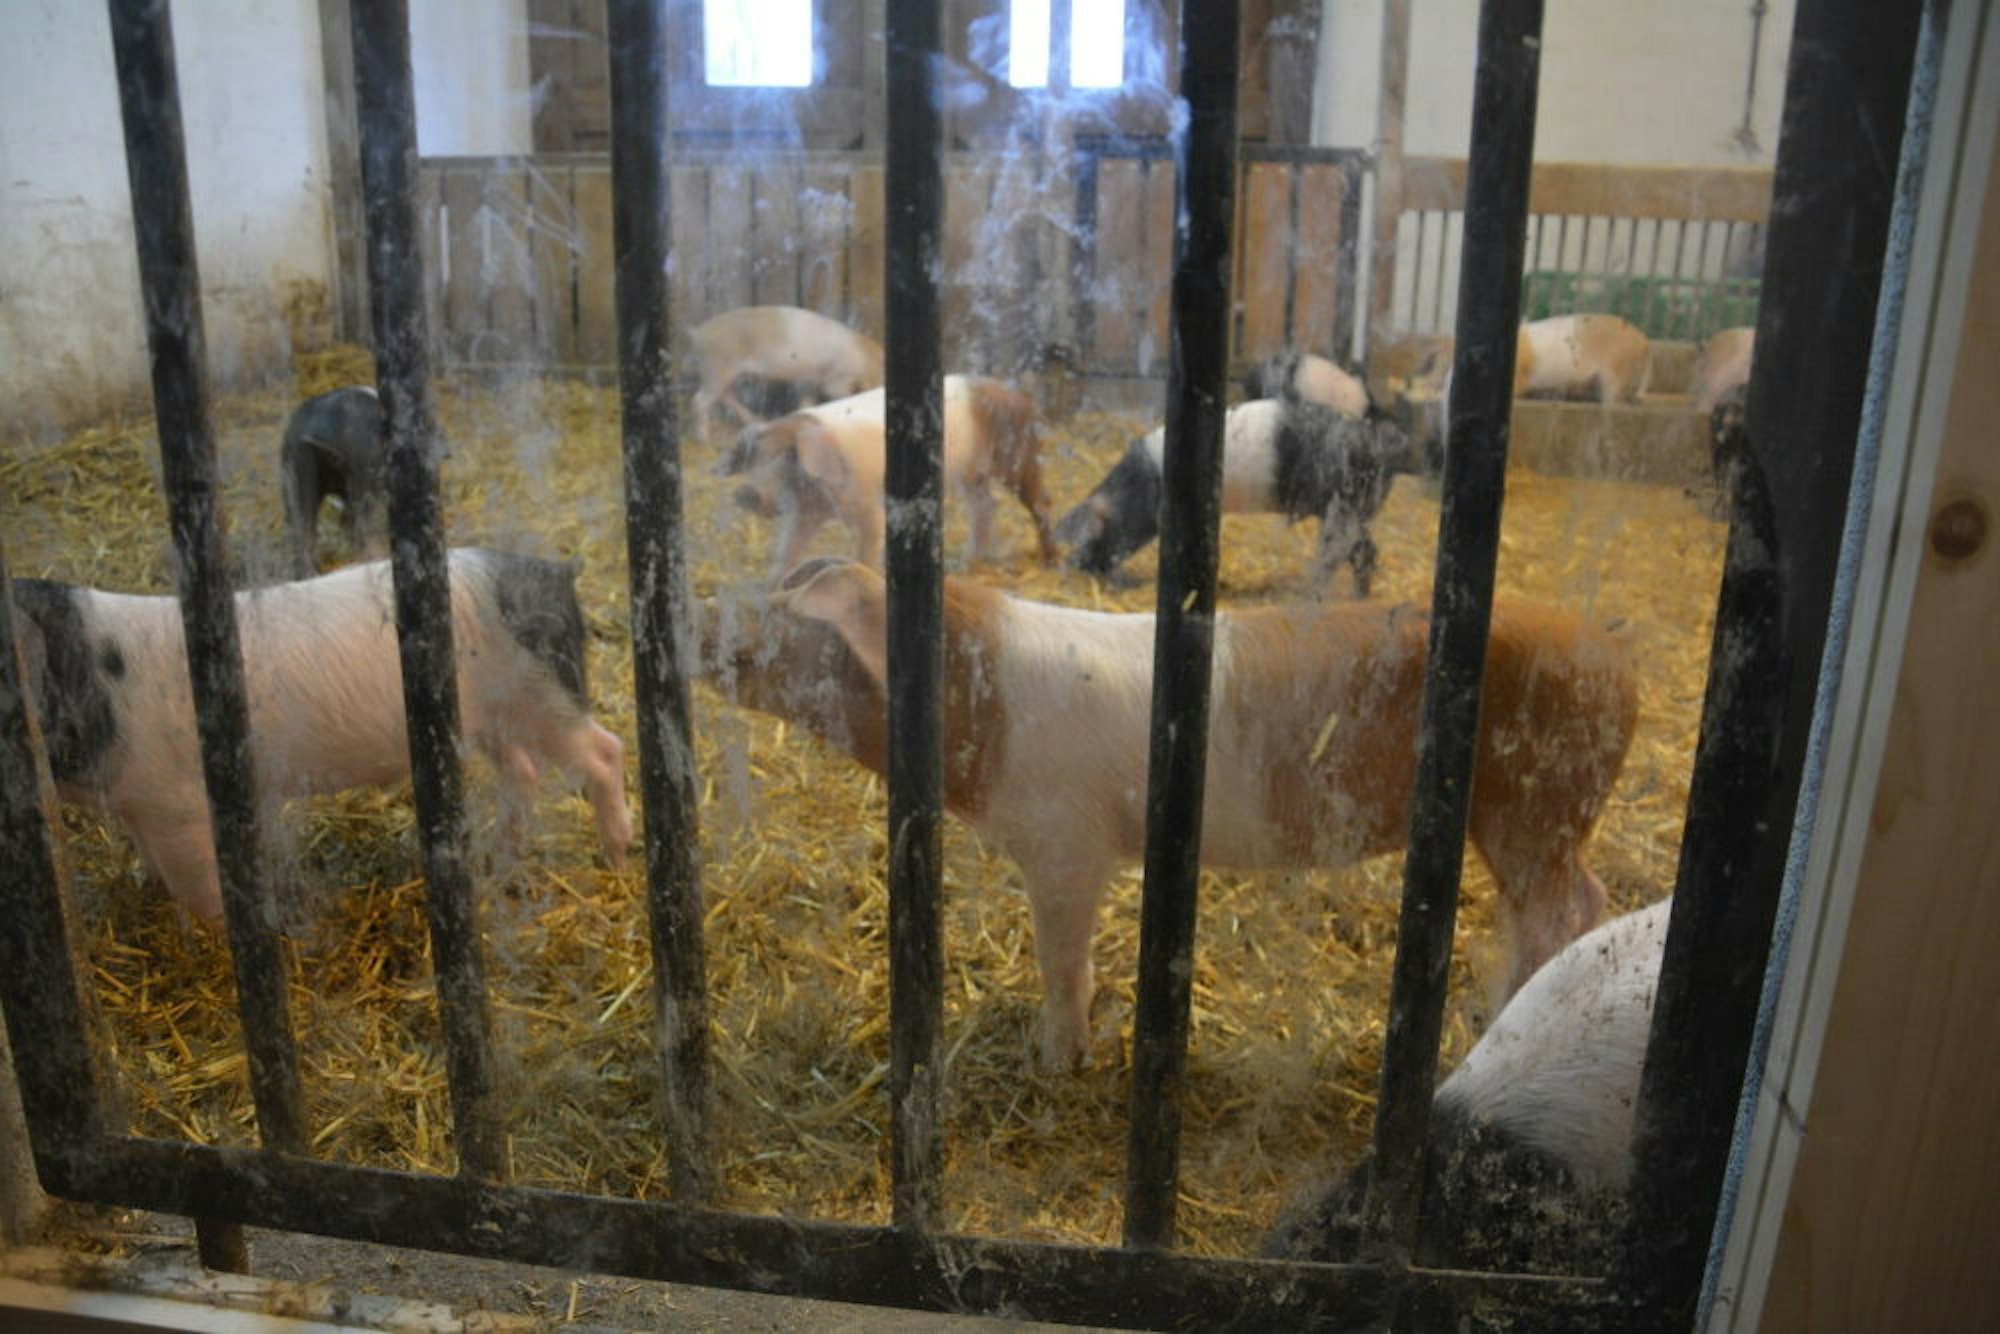 Auf dem Glessener Mühlenhof kann man die Schweine hinter Glas beobachten, Anfassen oder gar Füttern ist zur Zeit verboten.